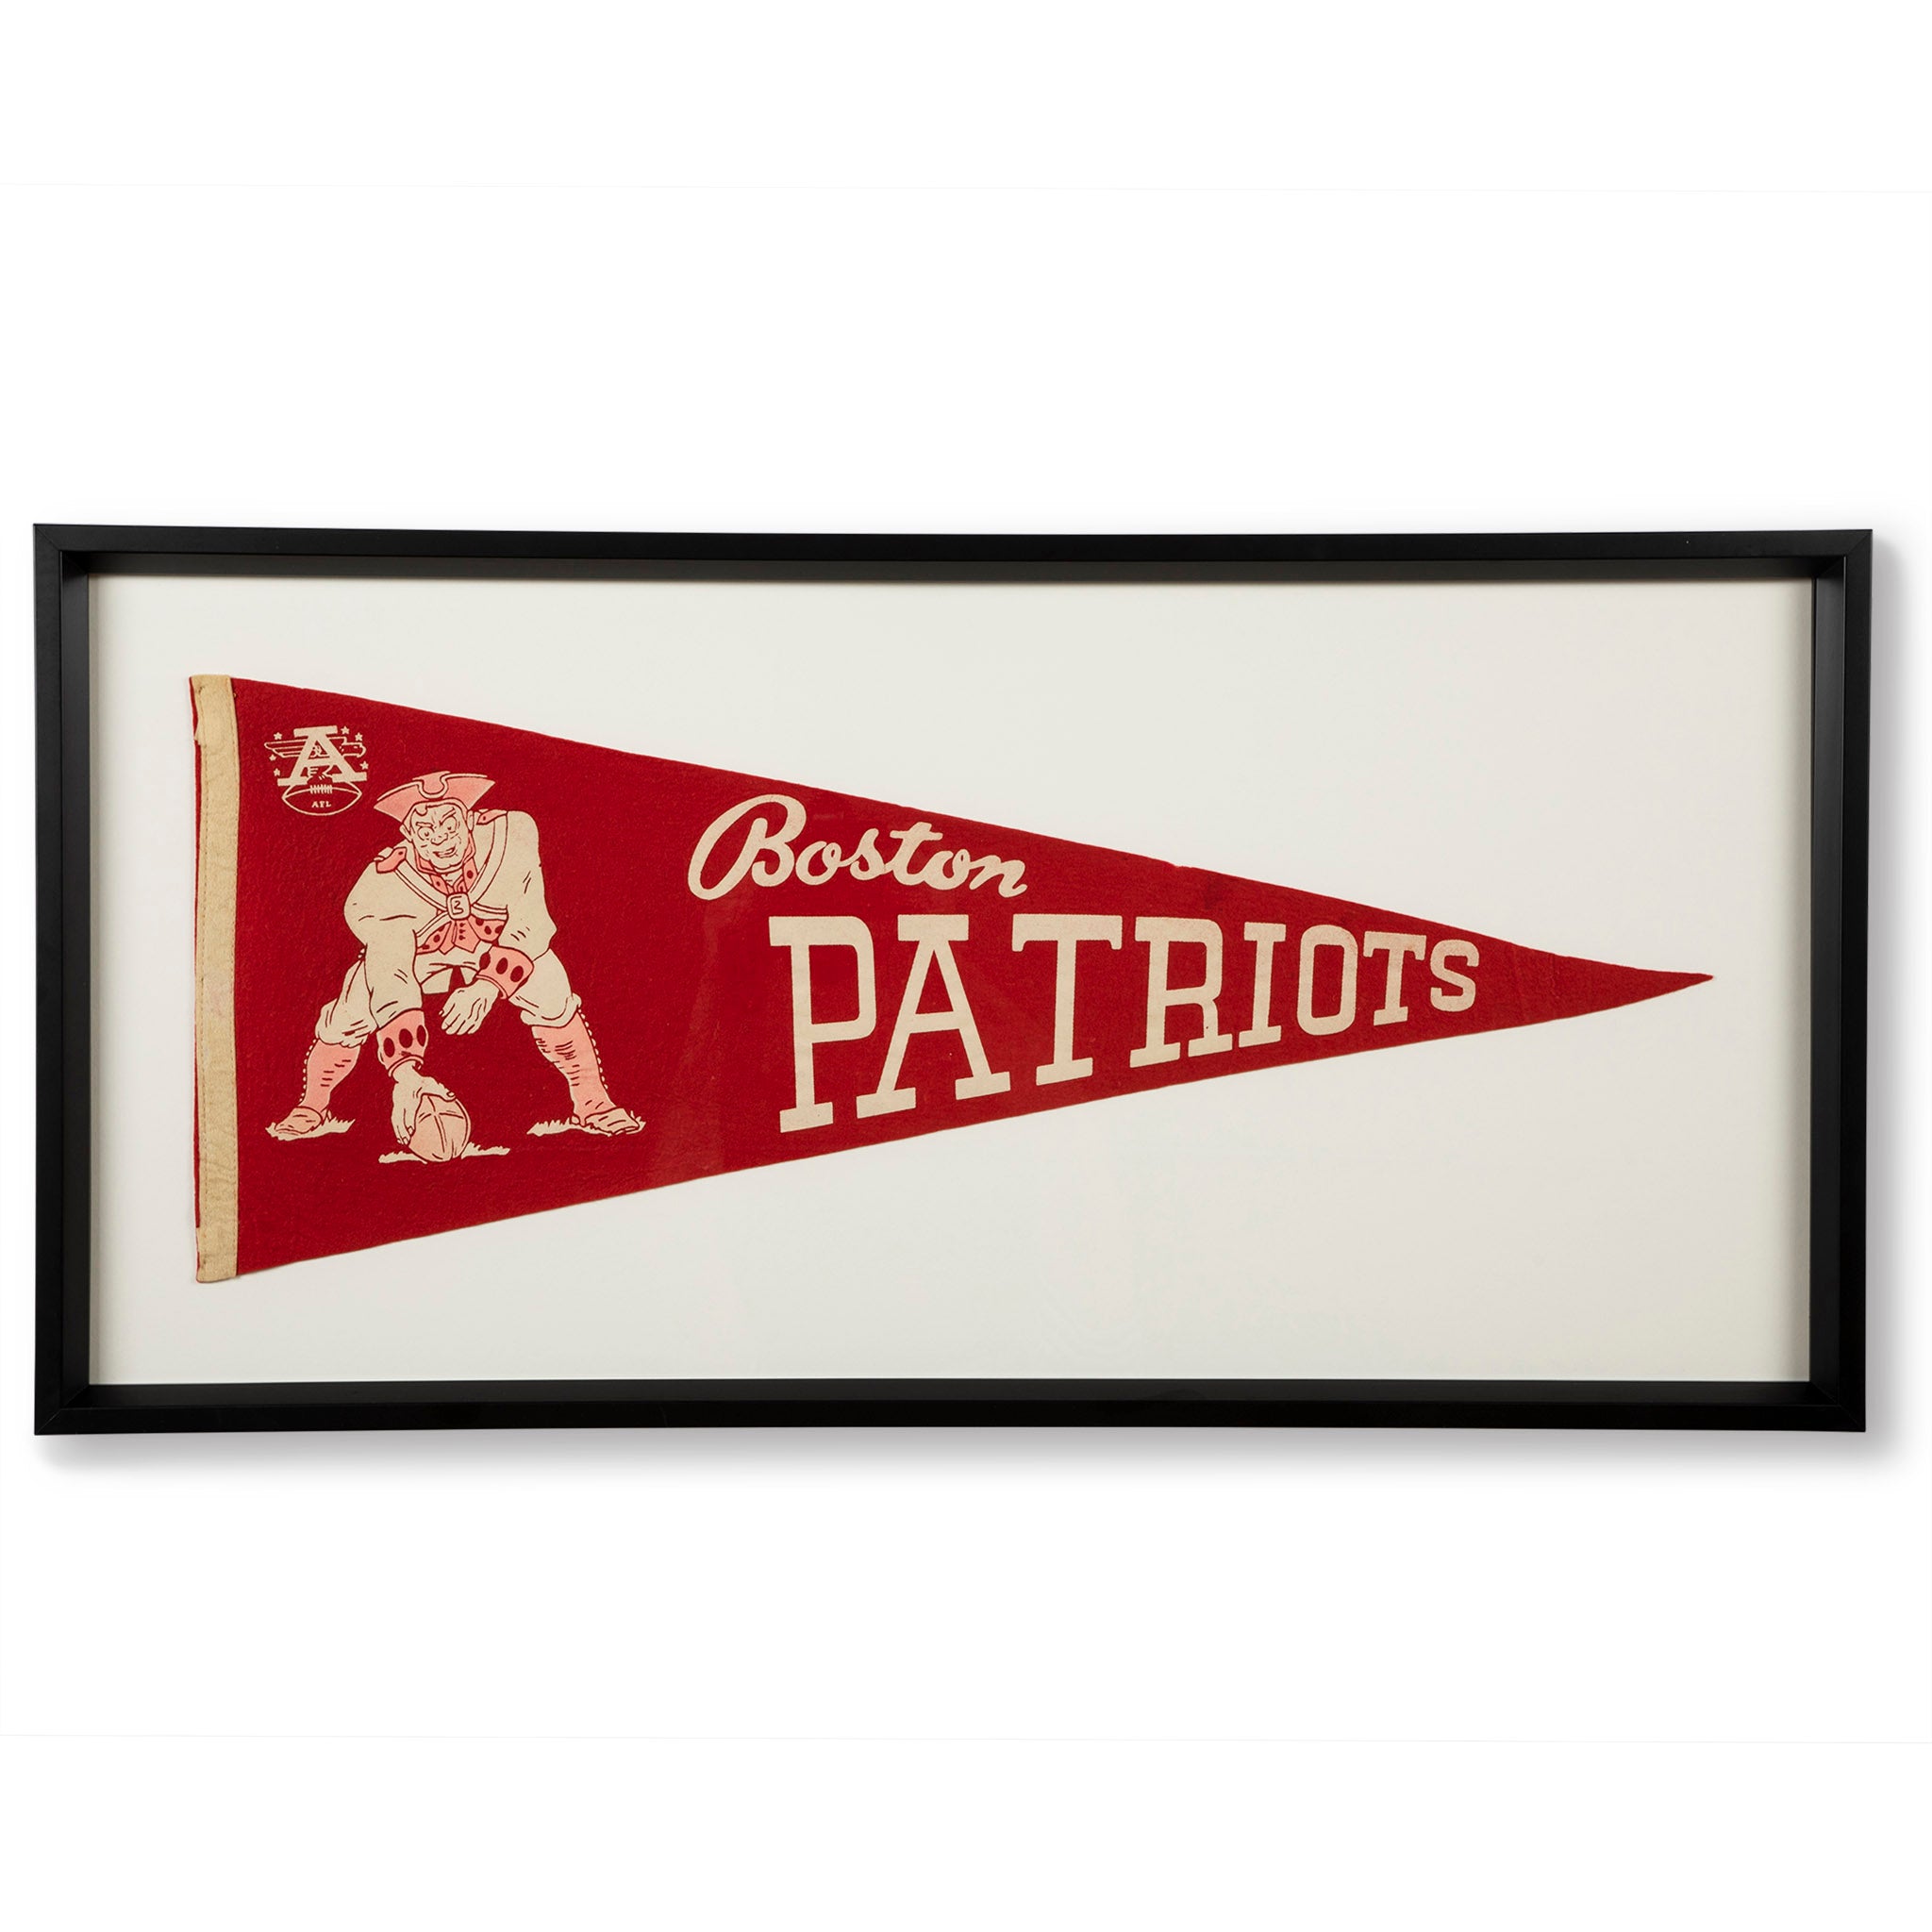 Framed Vintage Boston Patriots Football Pennant